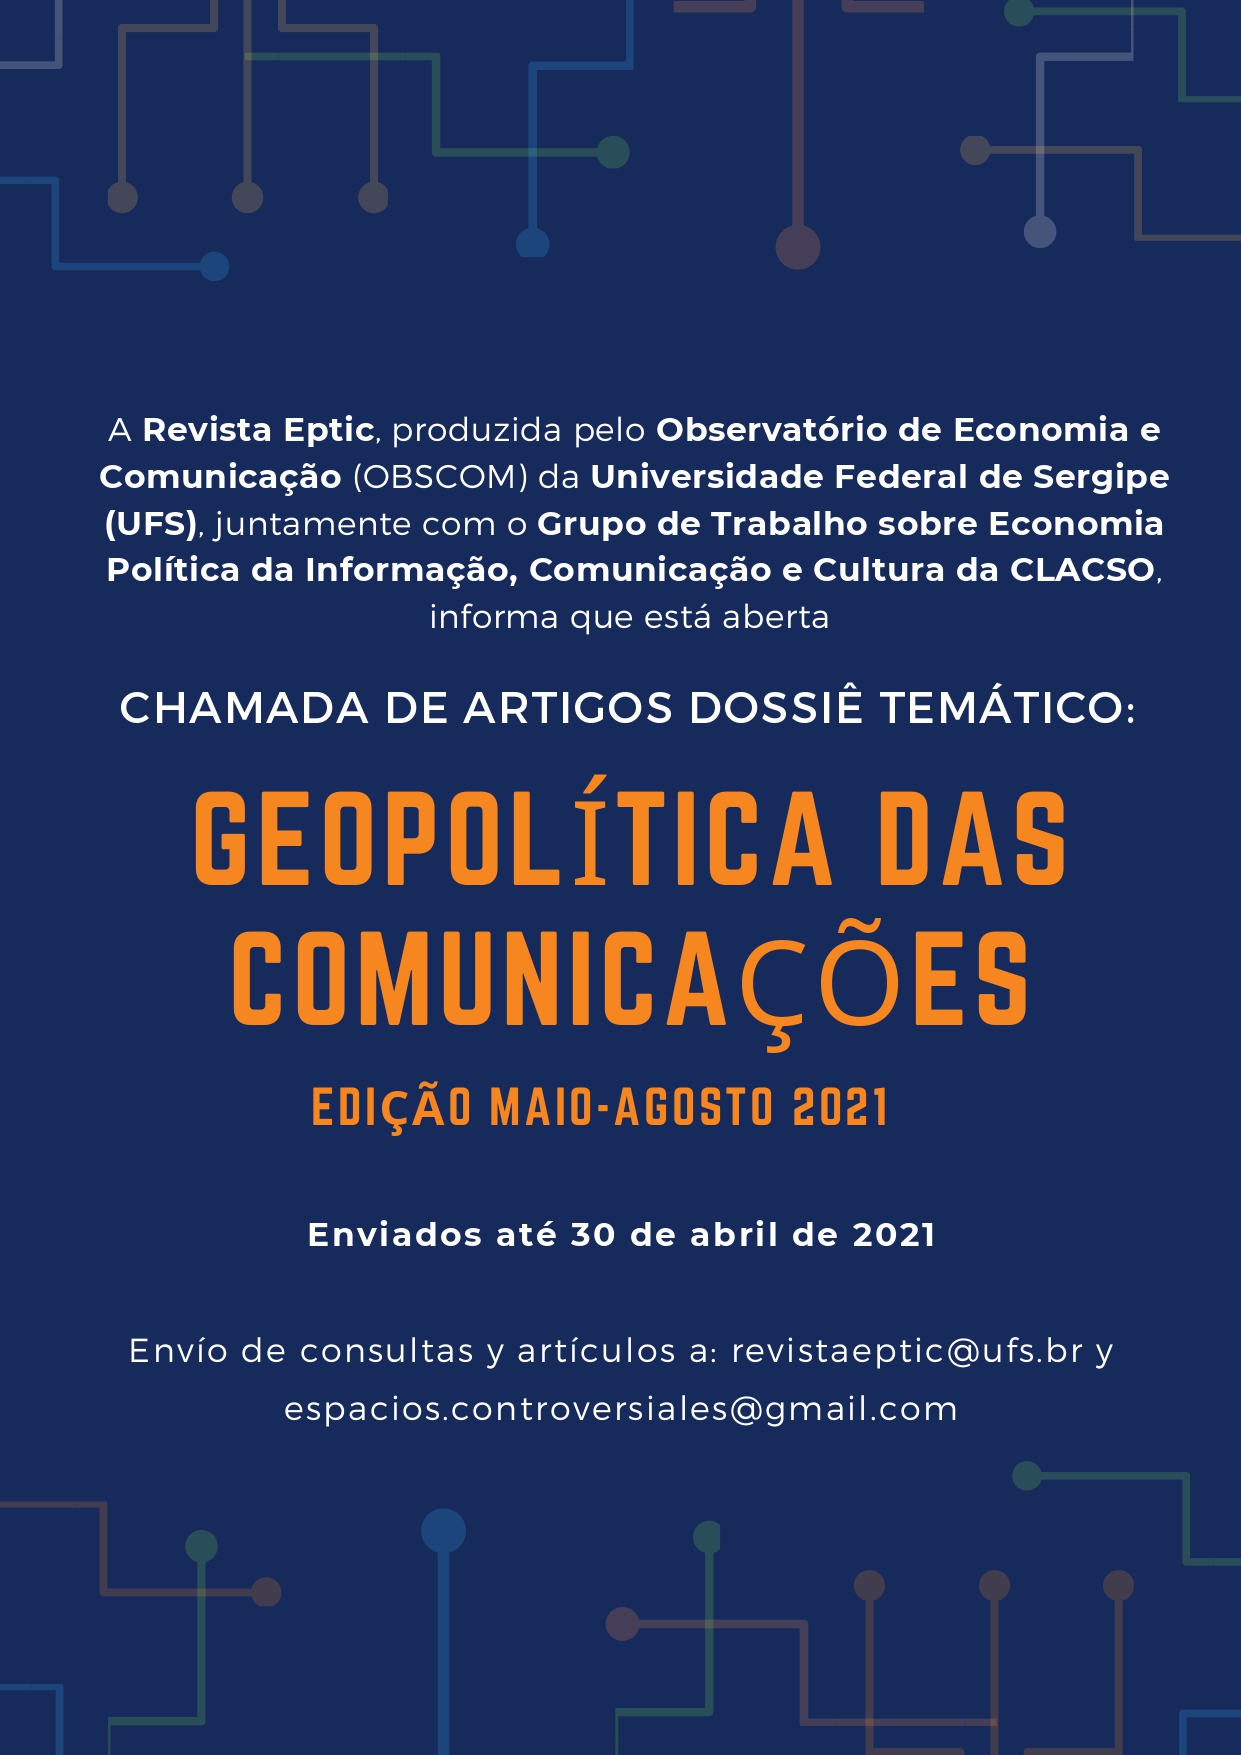 Convocatoria_Dossier_Geopolítica_de_las_Comunicaciones_PORT_(4)_page-0001.jpg